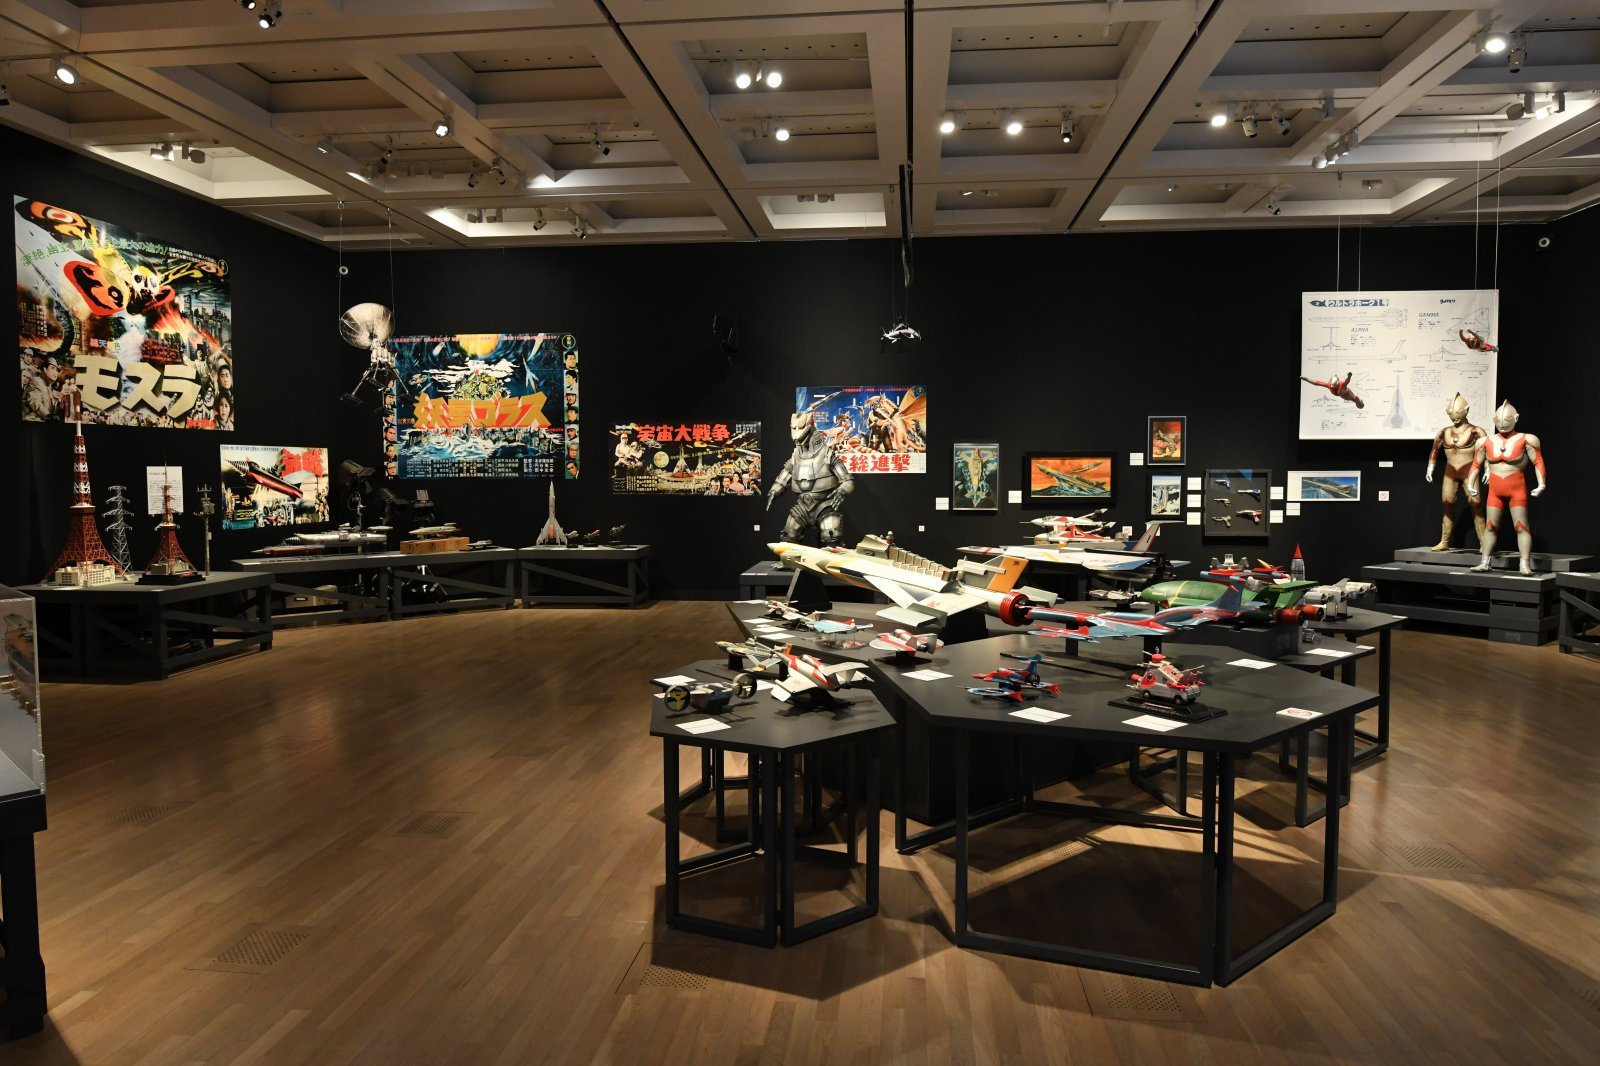 庵野秀明の創作活動を辿る大規模展覧会で、『シン・ウルトラマン』への 